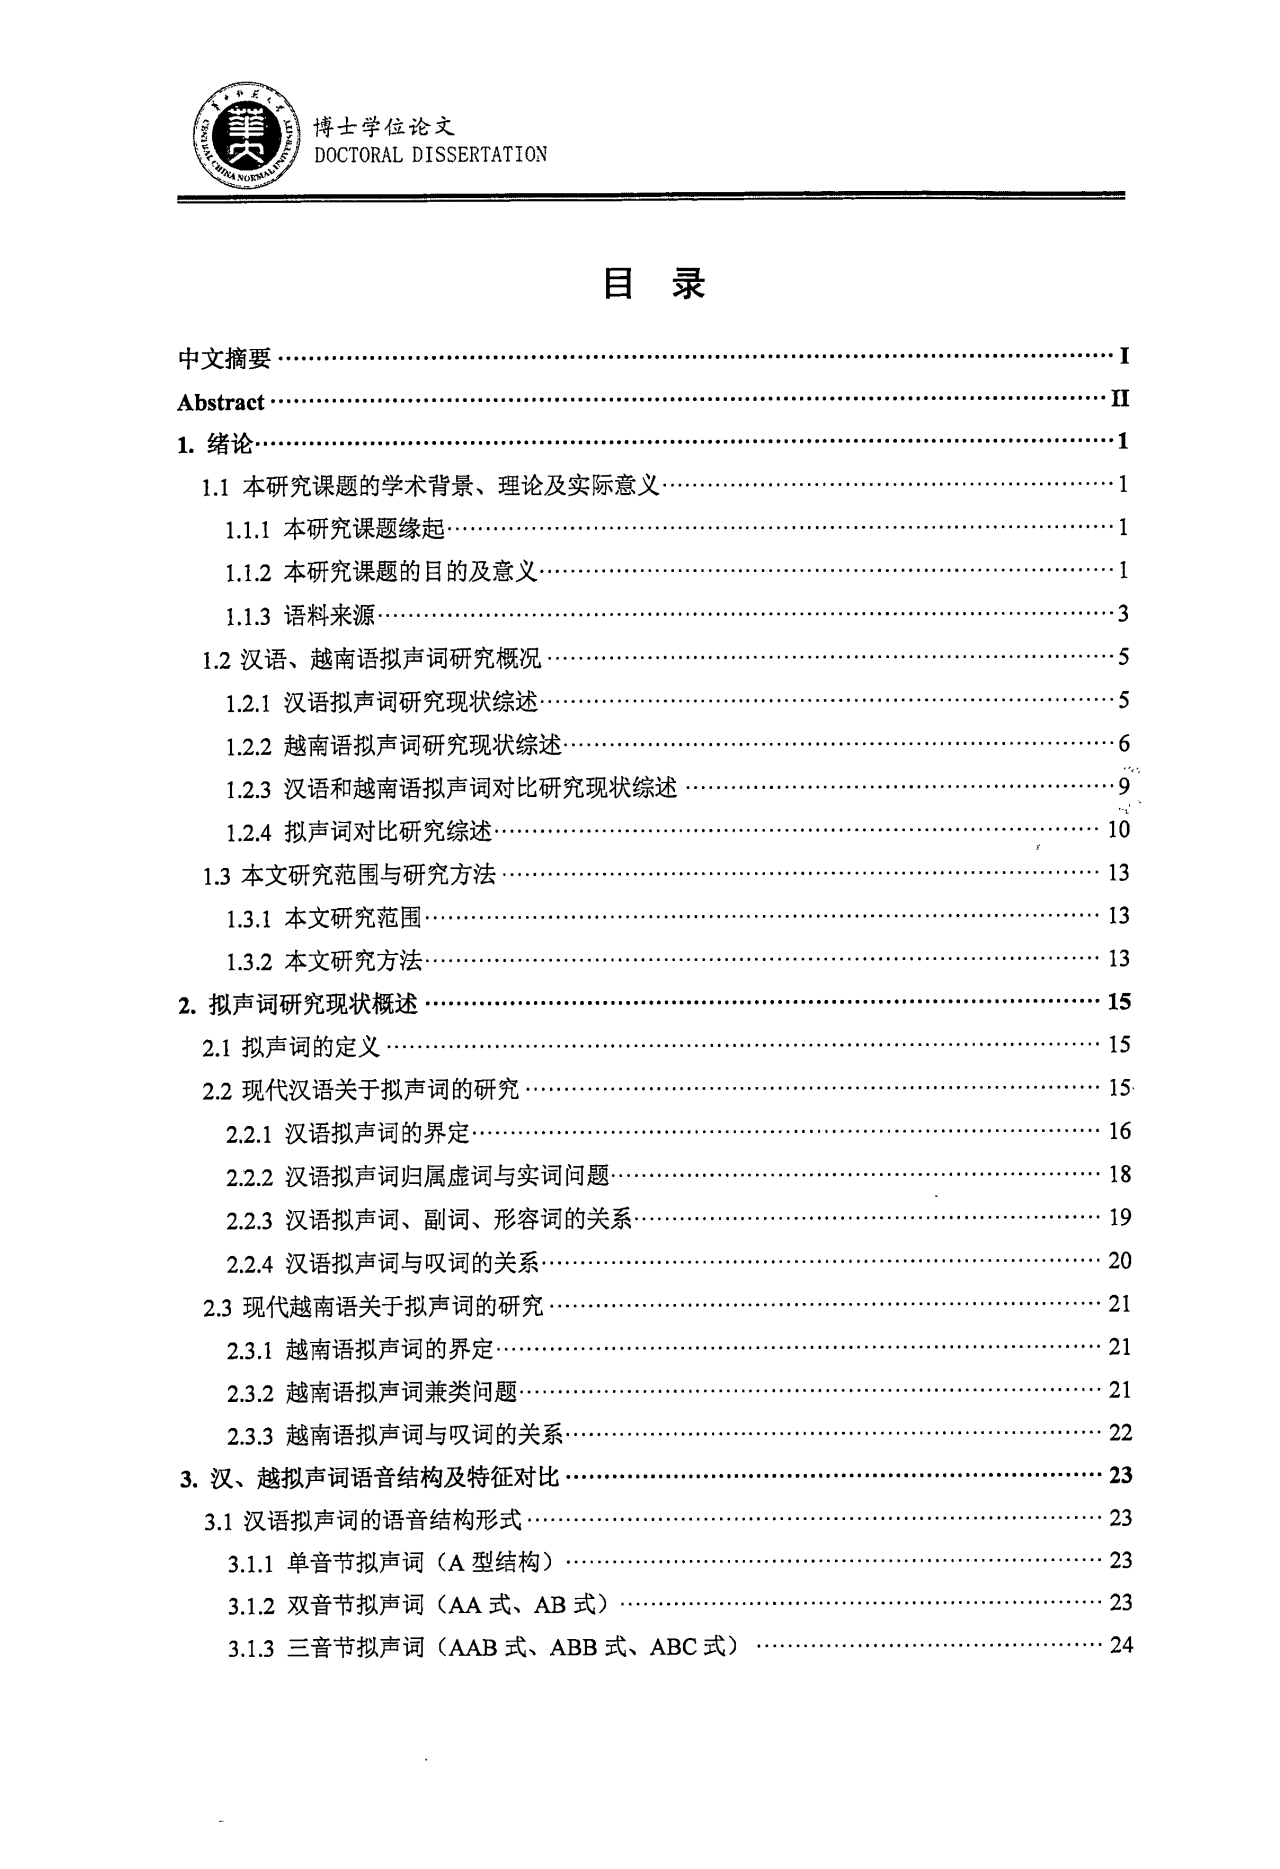 汉语和越南语拟声词对比研究